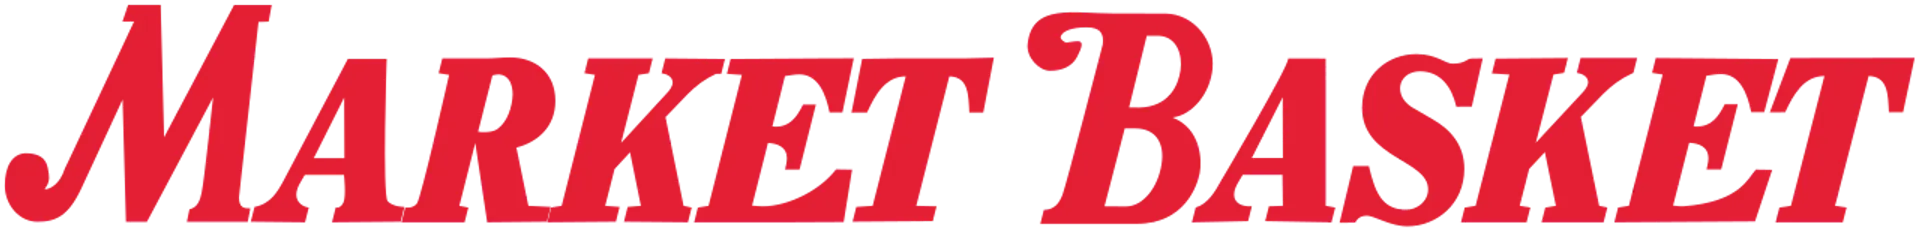 MARKET BASKET logo de catálogo